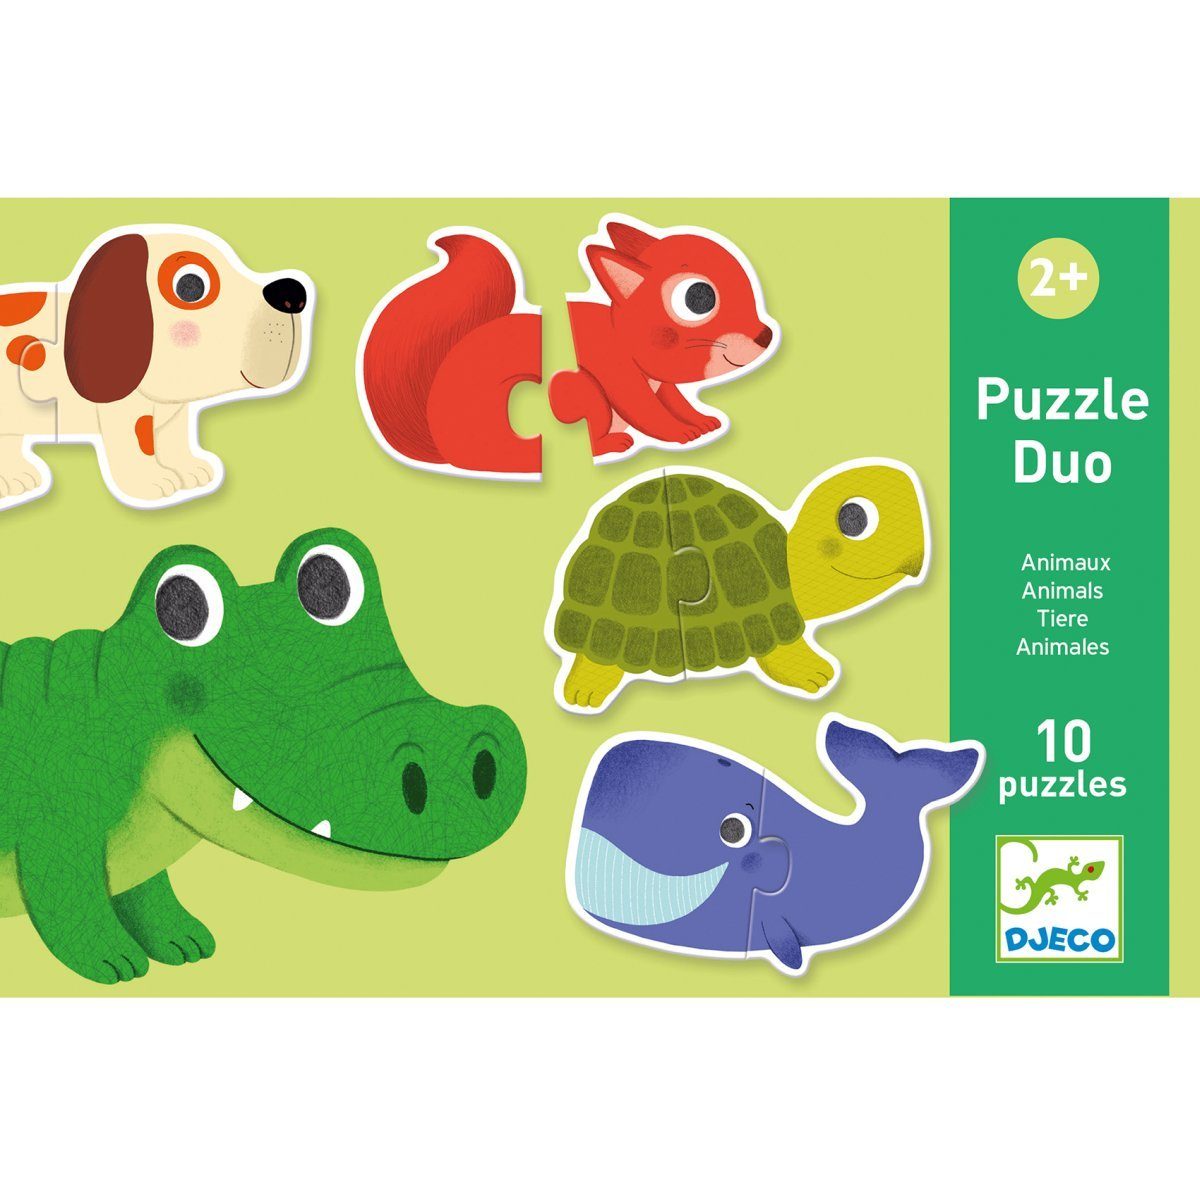 Puzzleteile Puzzle ab Jahren, 2 2 Assoziationsspiel Lernspiel Duo Puzzle Kinder DJECO für